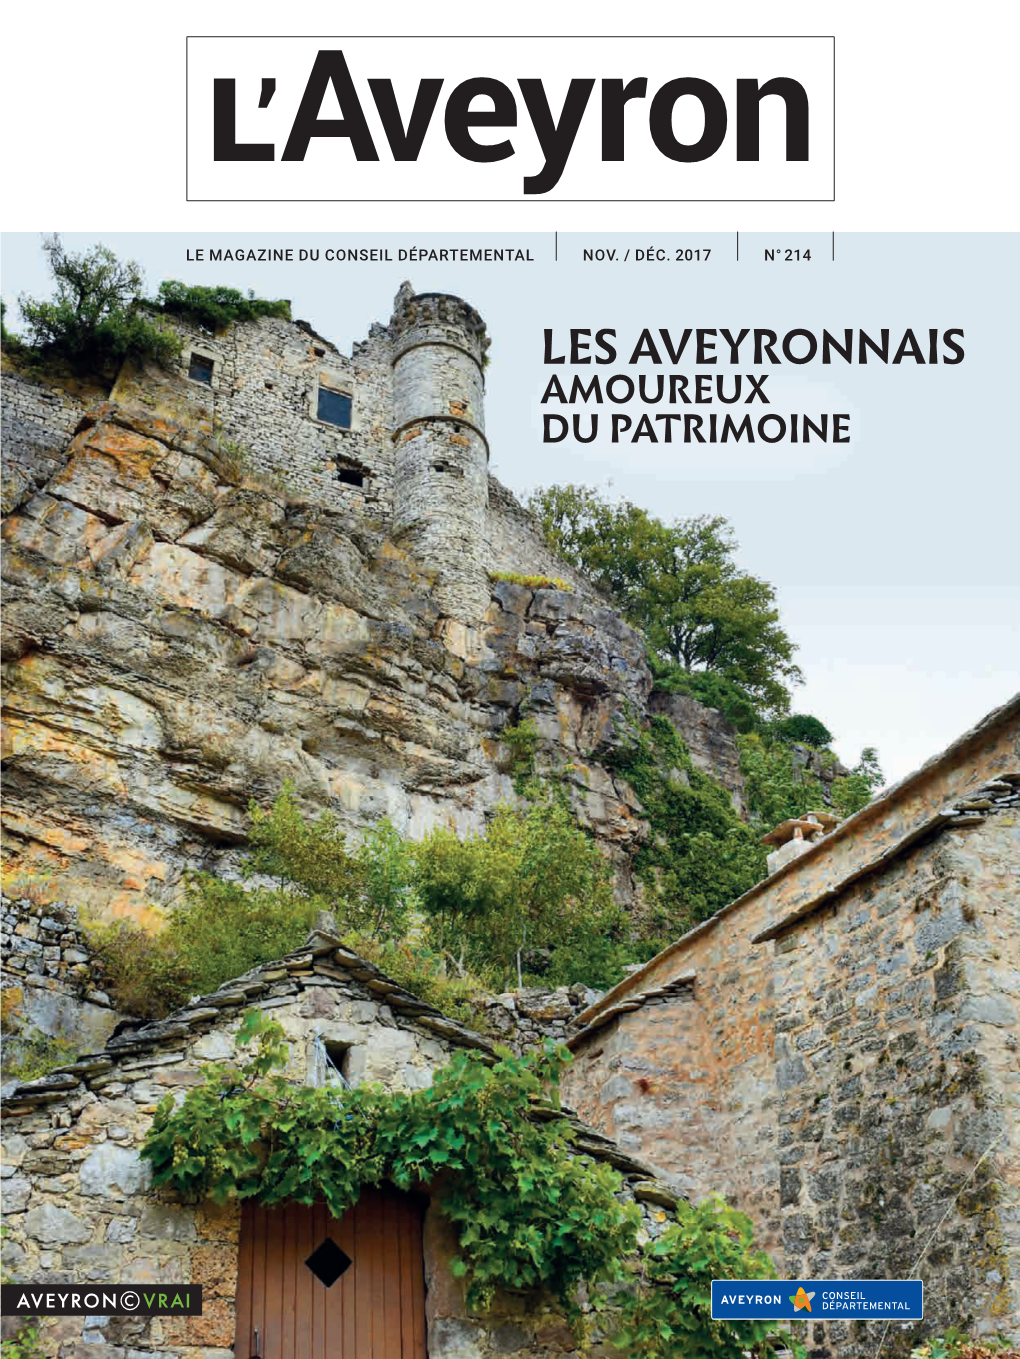 LES AVEYRONNAIS AMOUREUX DU PATRIMOINE La Nouvelle Physionomie De L’Aire De L’Aveyron a Attiré De Très Nombreux Visiteurs Cet Été